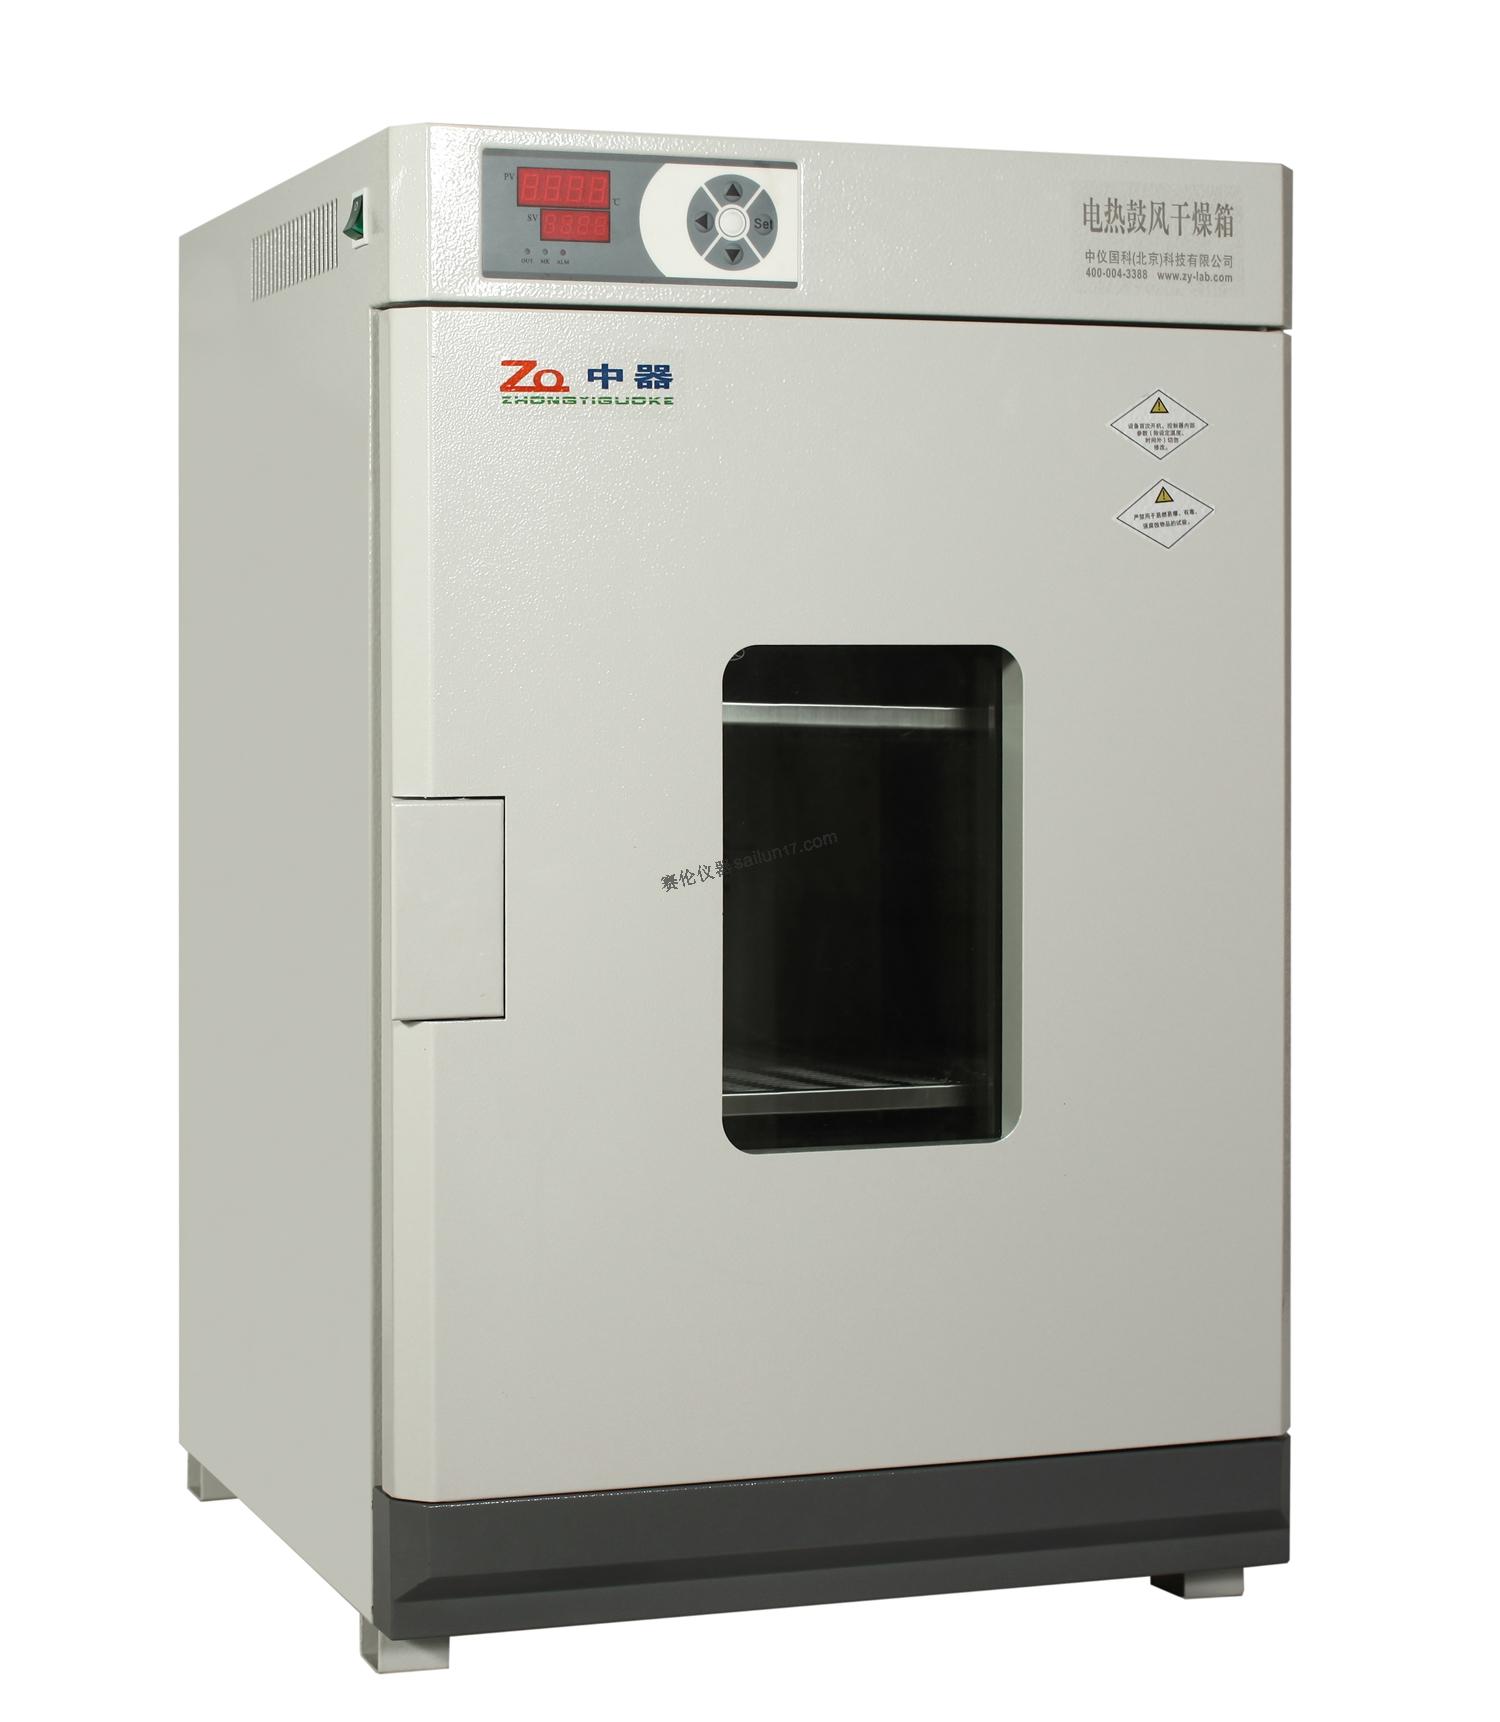 中器DHG-9620A电热鼓风干燥箱(250℃)